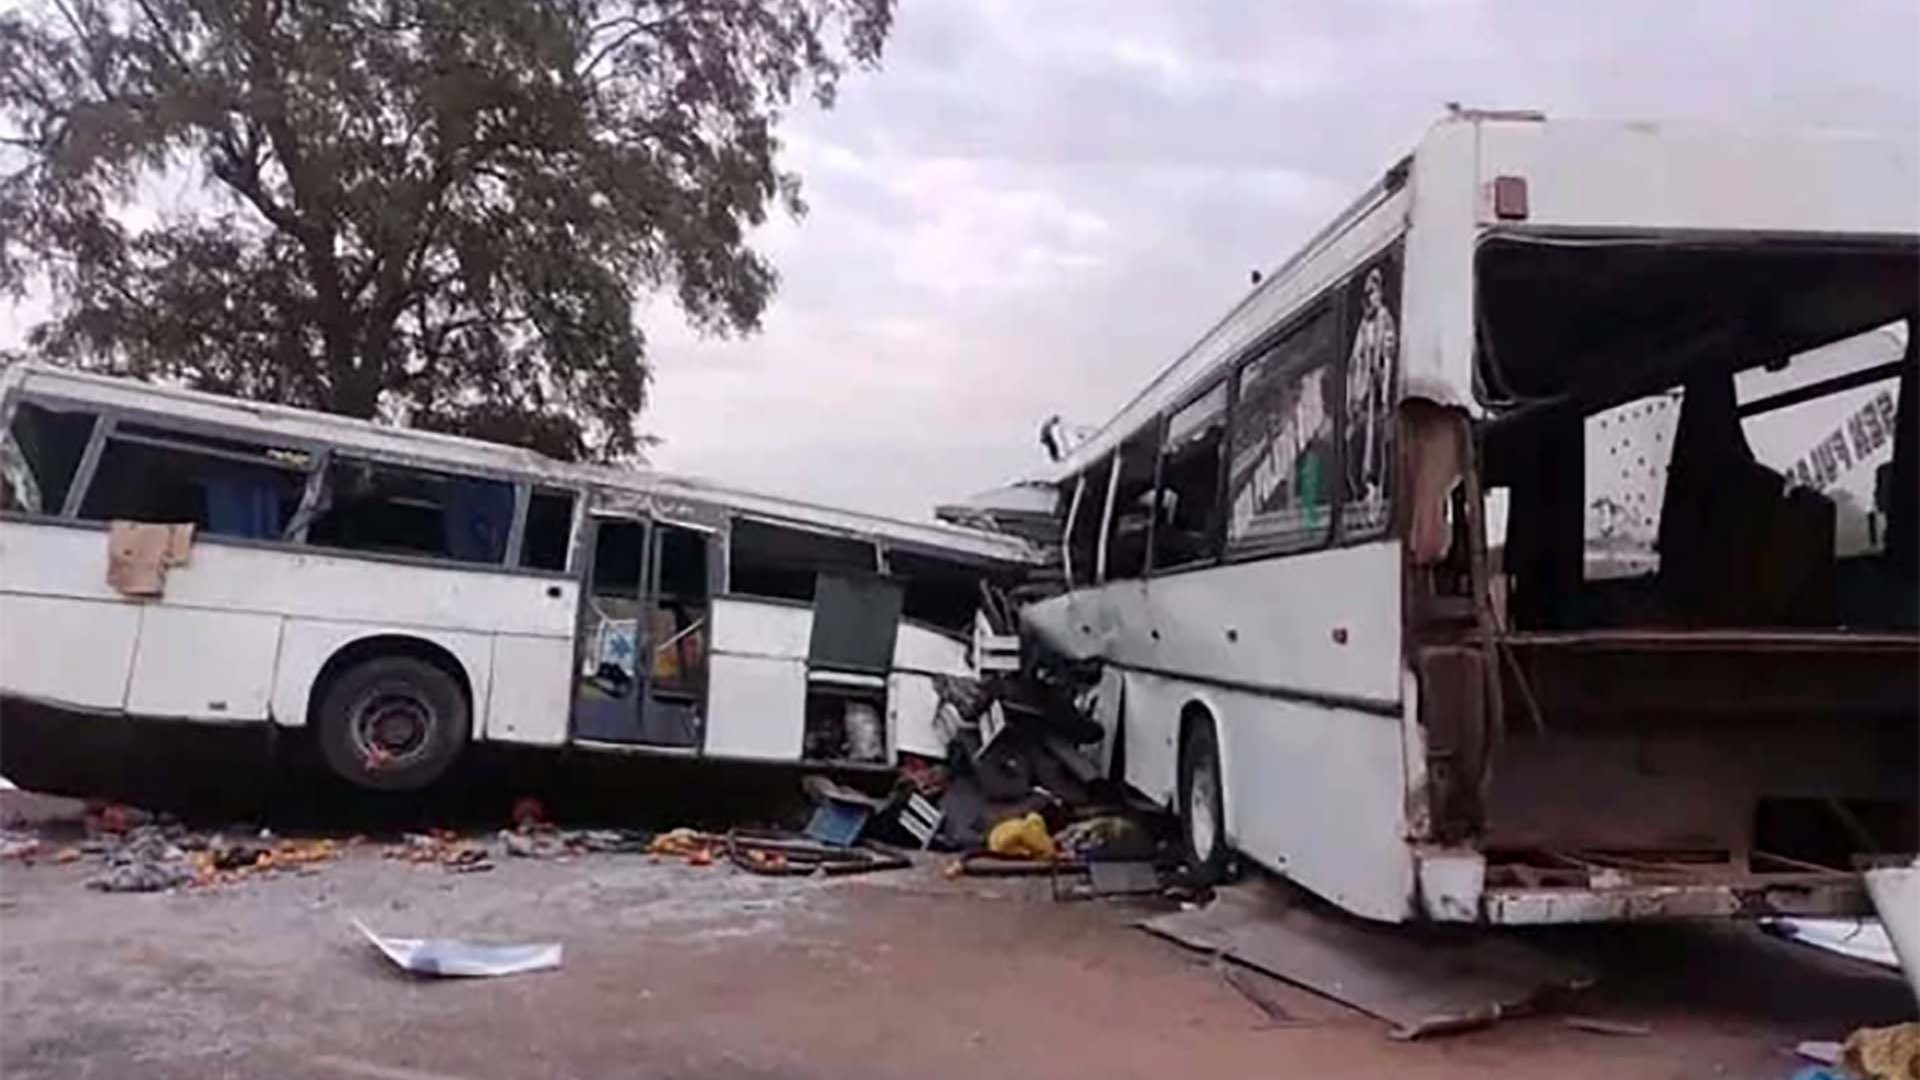 Điện chia buồn về vụ tai nạn xe buýt tại thị trấn Kaffrine, Senegal